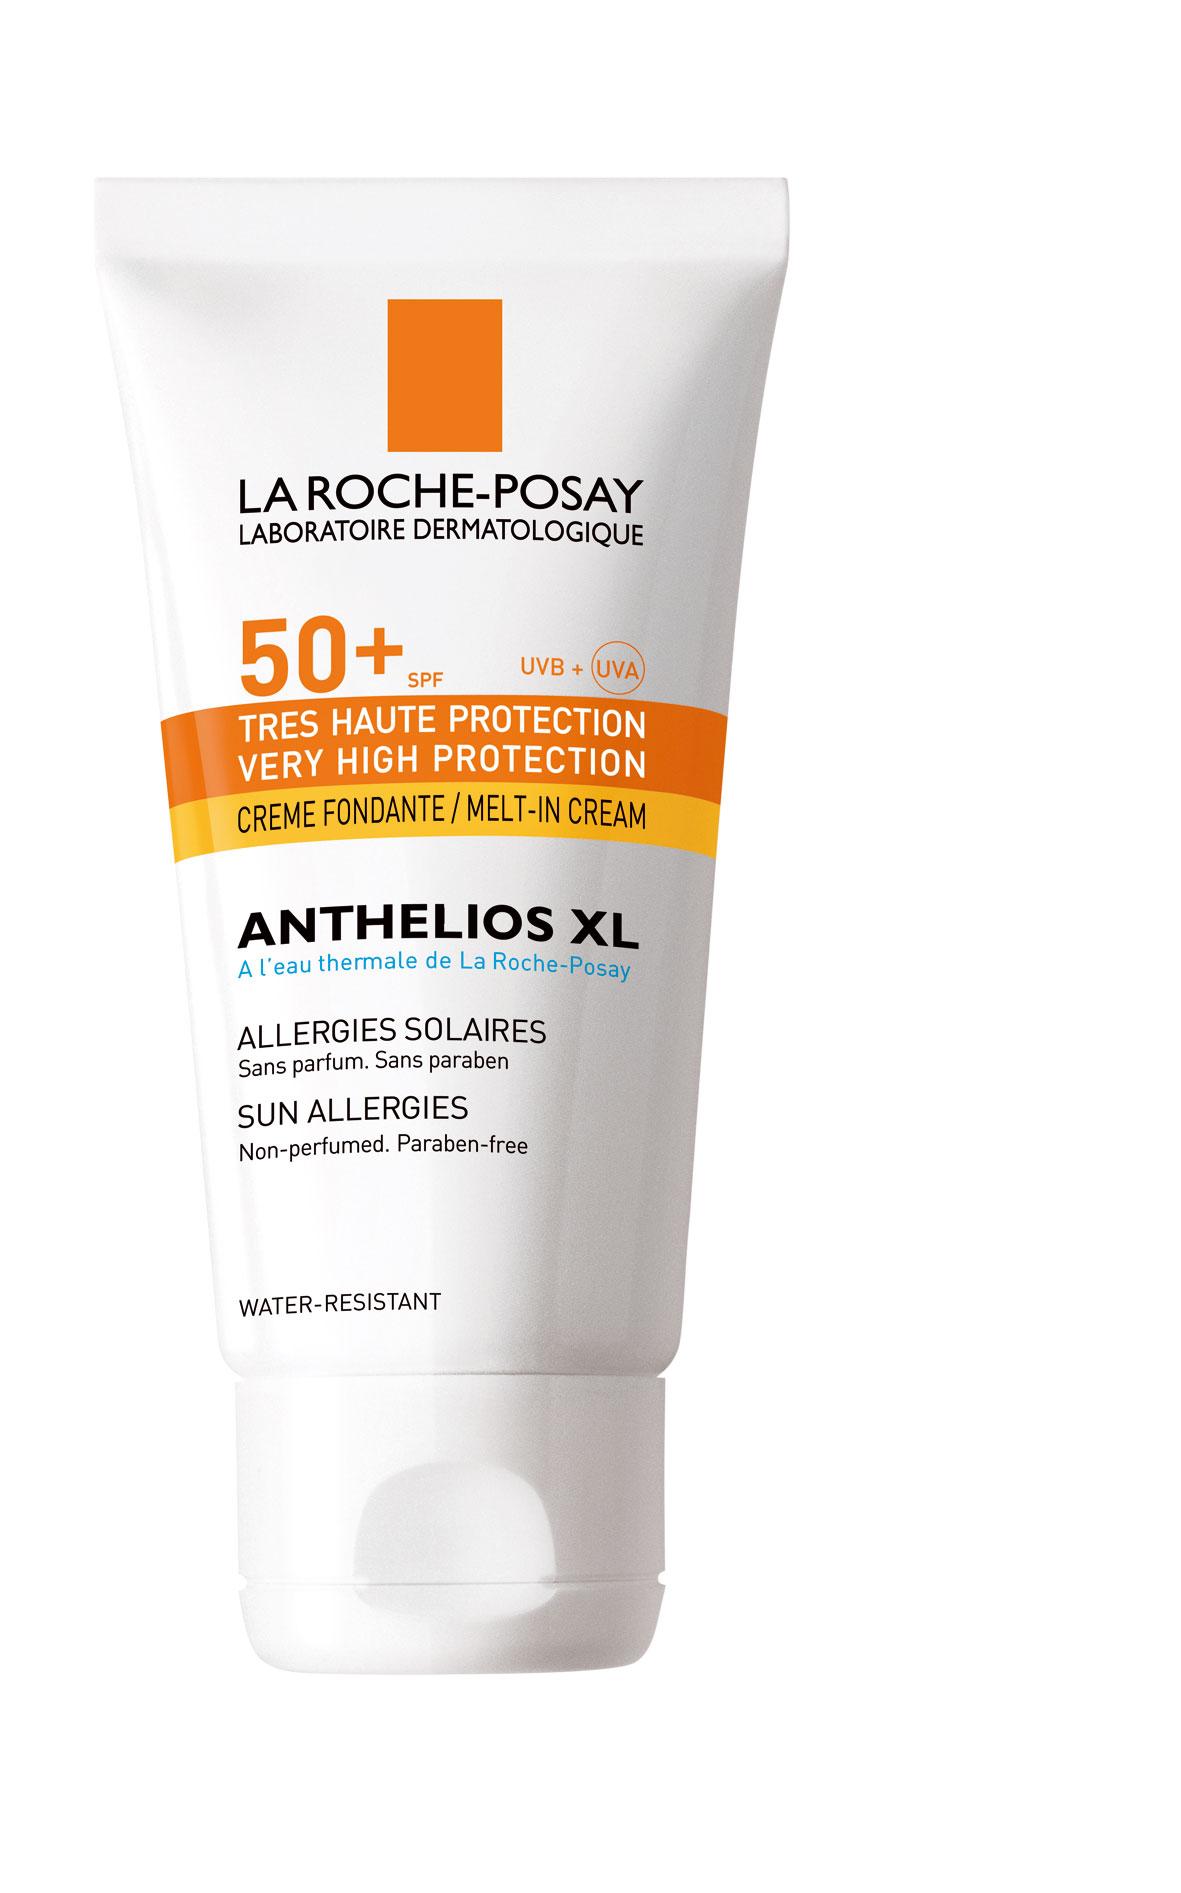 ”Anthelios XL ultra light SPF 50” från La Roche-Posay är en parfym- och parabenfri kräm särskilt anpassad för känslig hy. Den är lättare i konsistensen än vanliga solkrämer och sjunker smidigt in i huden. Pris, 185 kronor